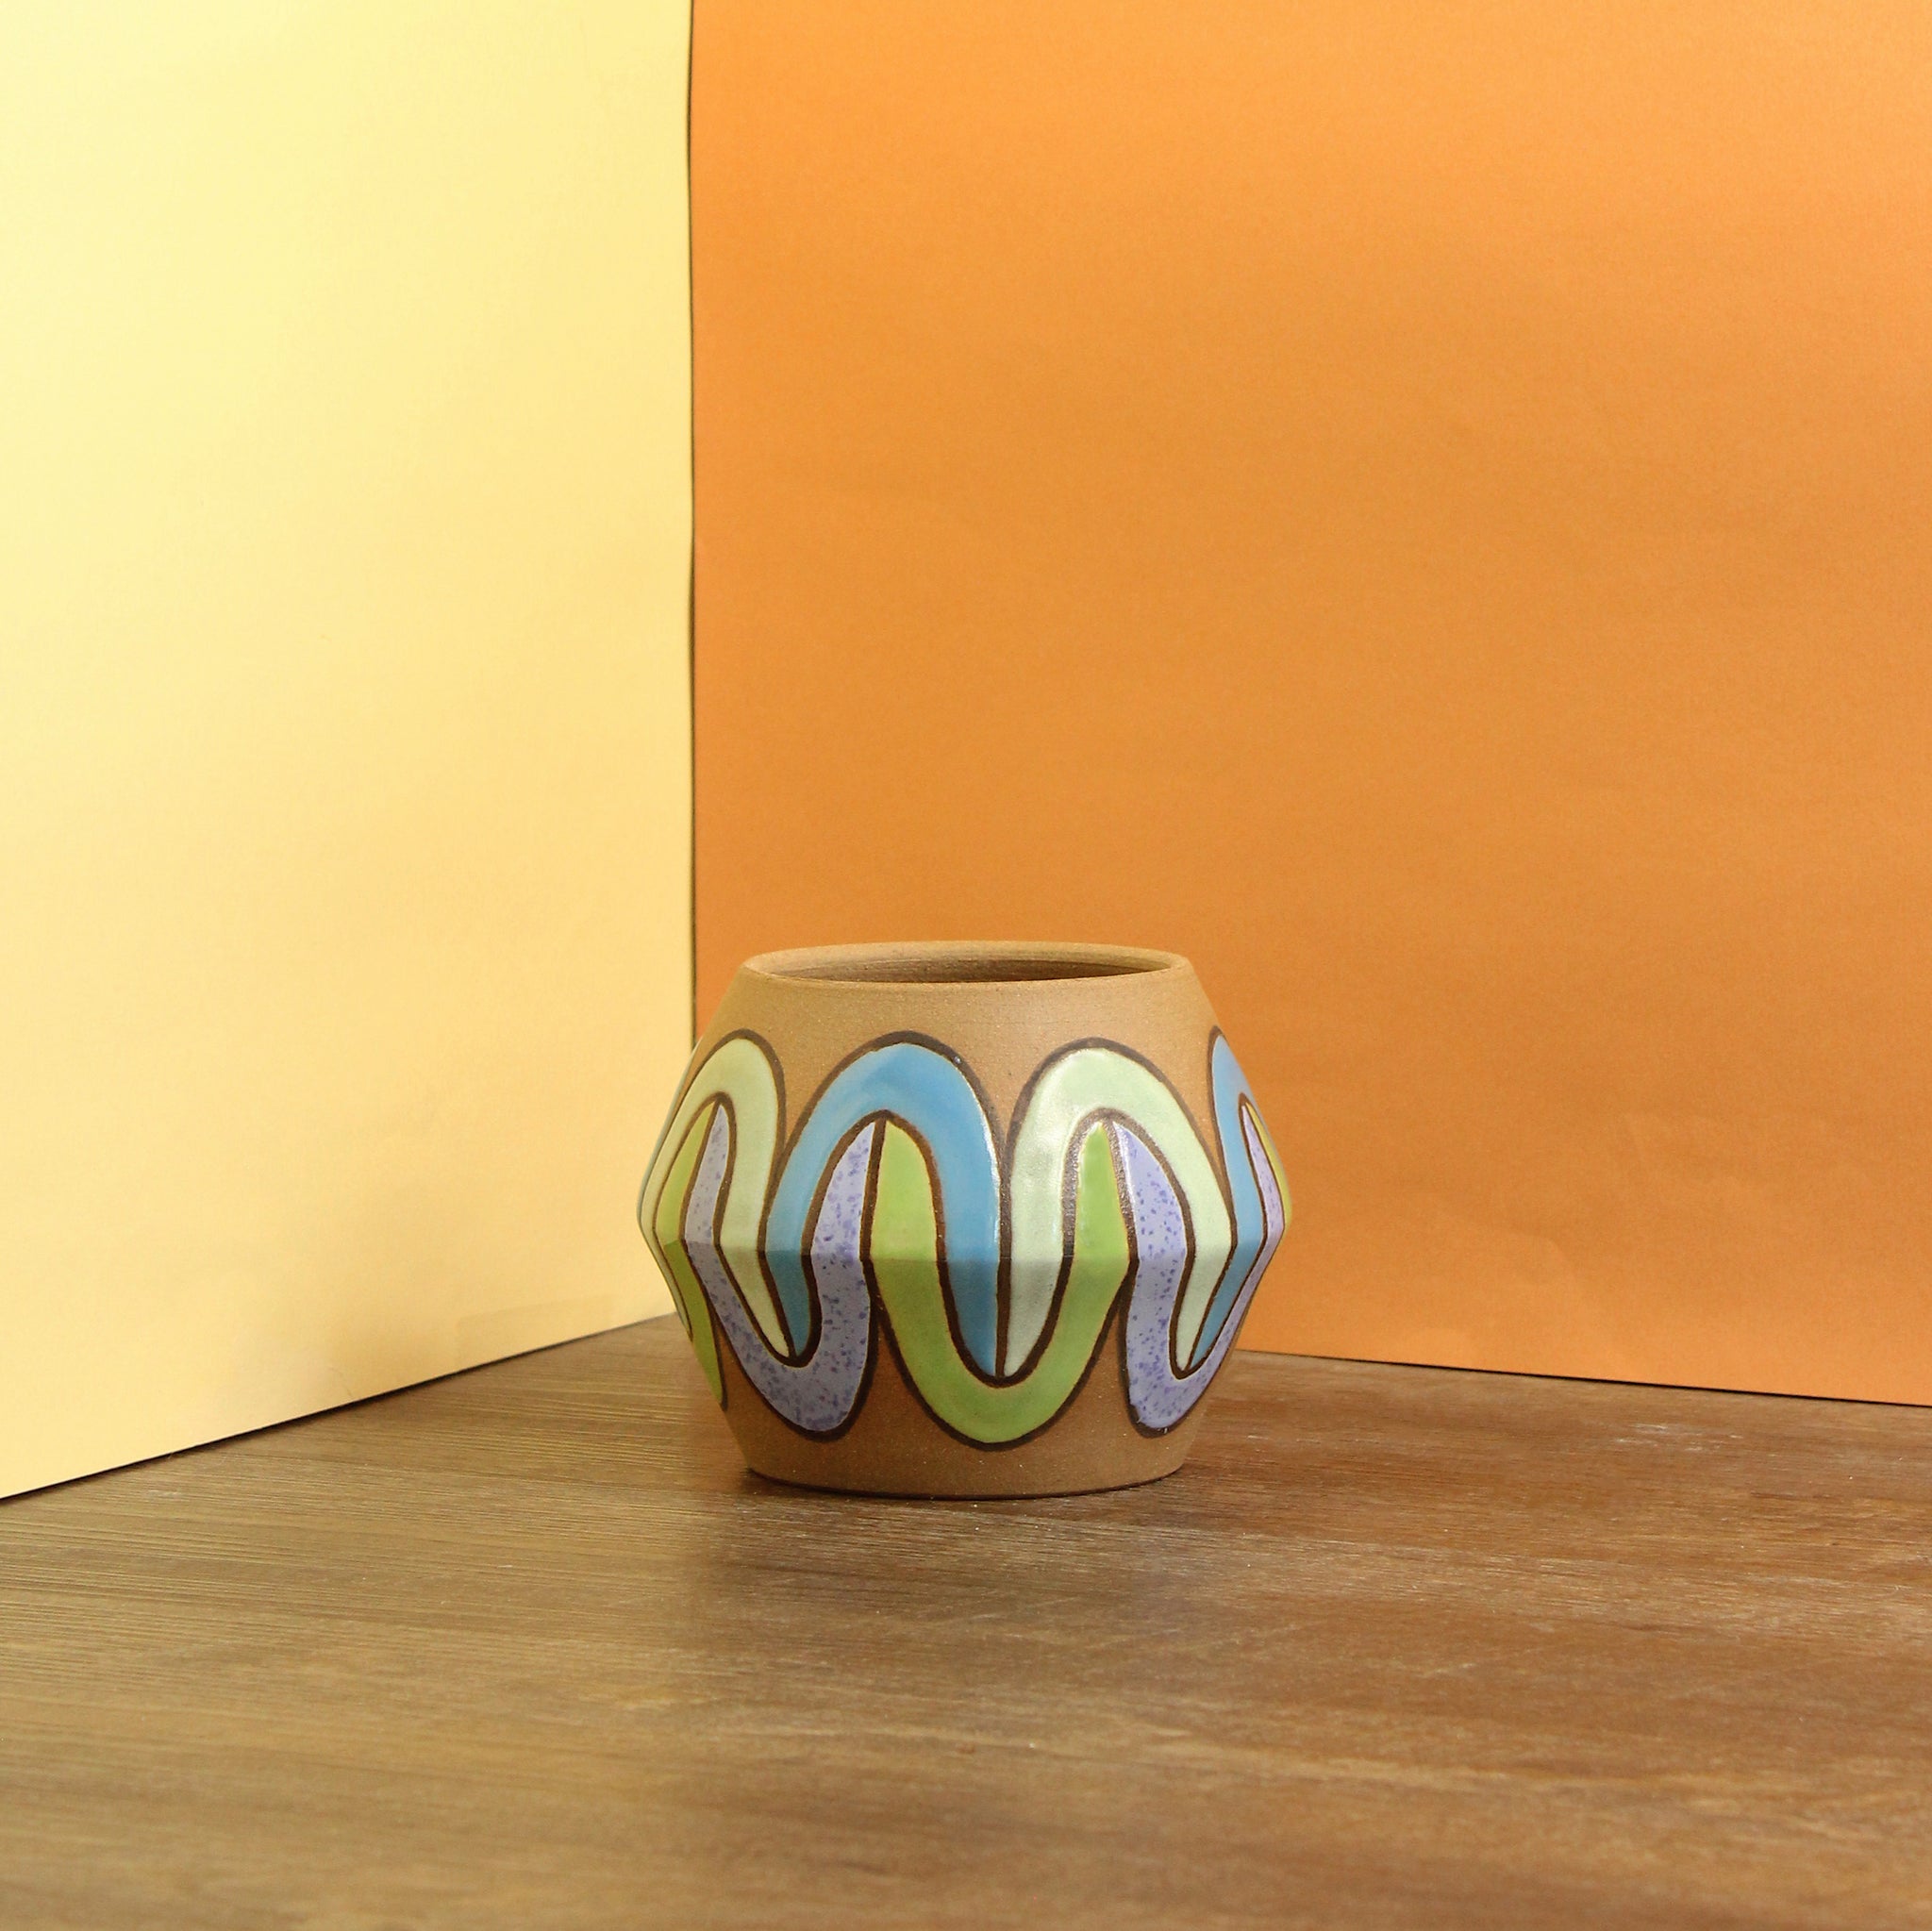 Glazed Stoneware Pot with Overlapping Horseshoe Pattern